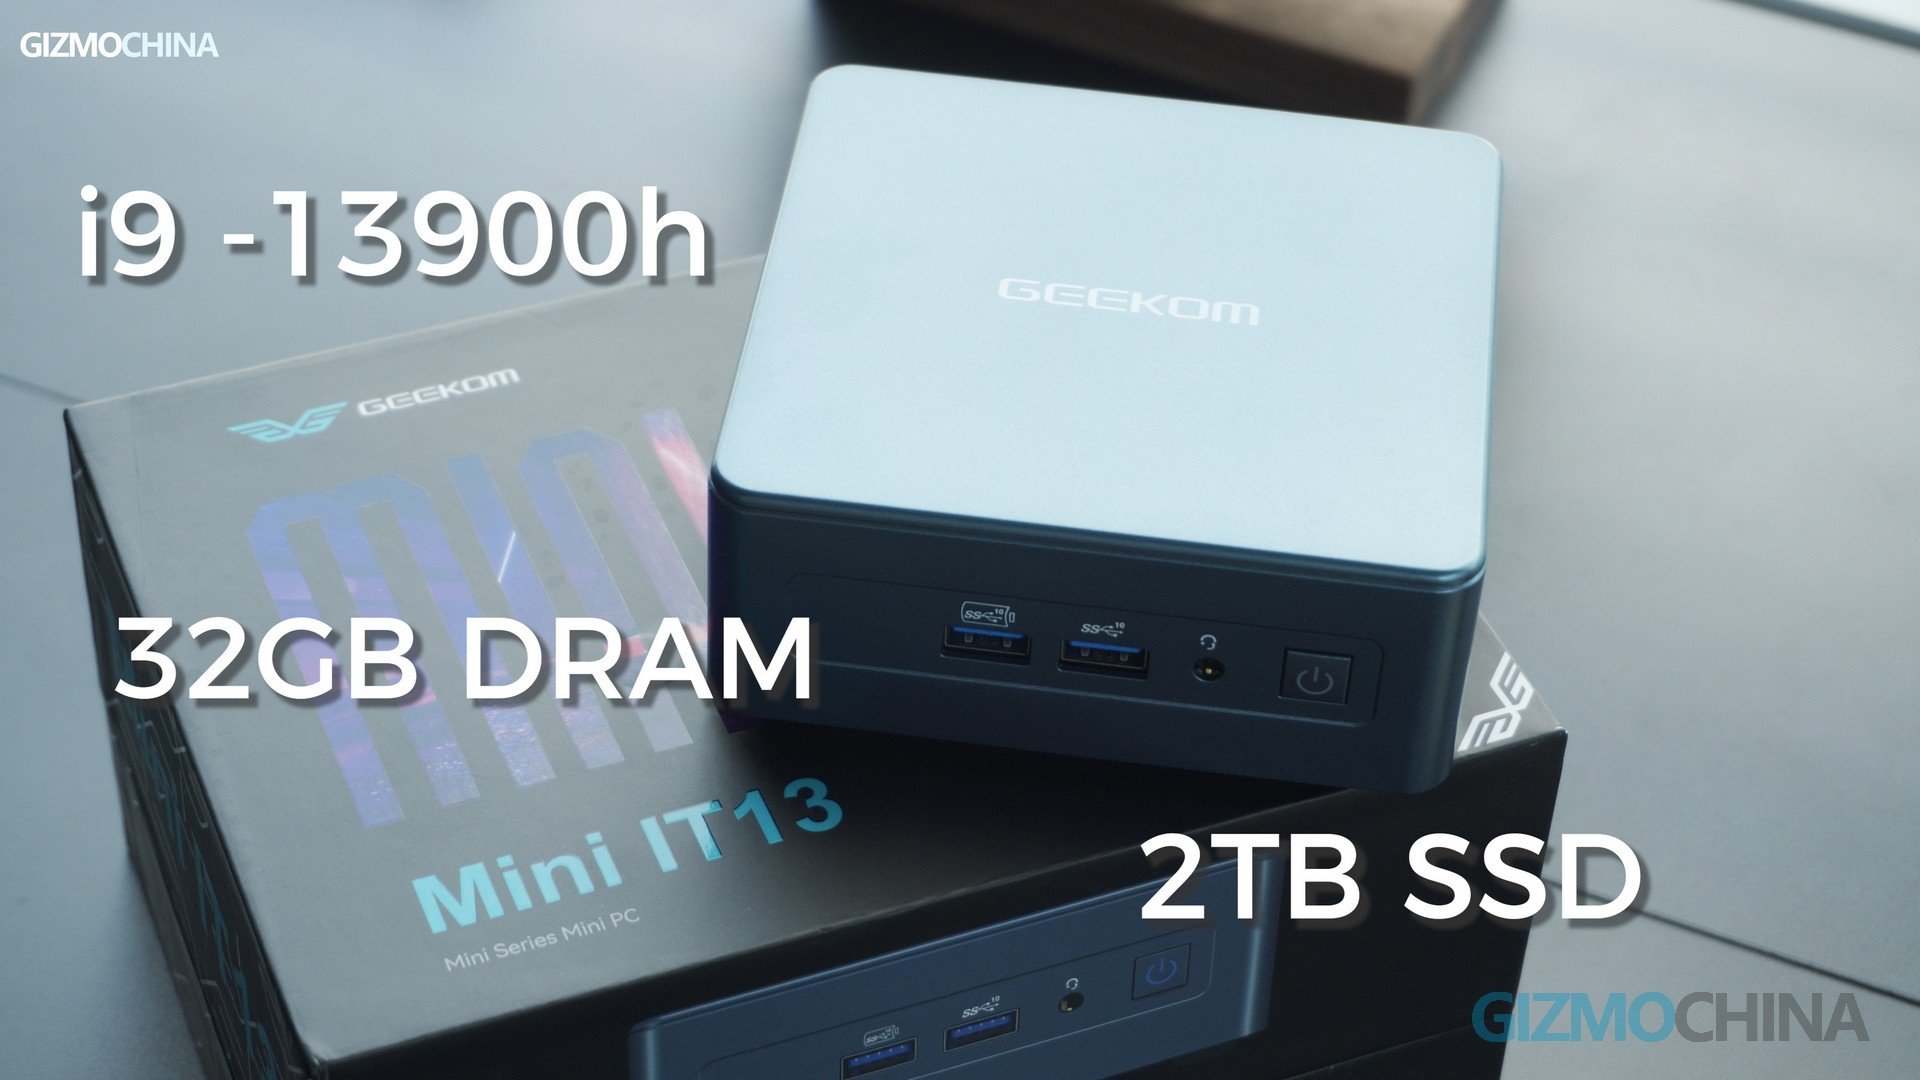 GEEKOM Mini IT13 PC Review & Test - 13th Gen Intel Core i9-13900H, 32GB  RAM, 2TB SSD - Powerful! 